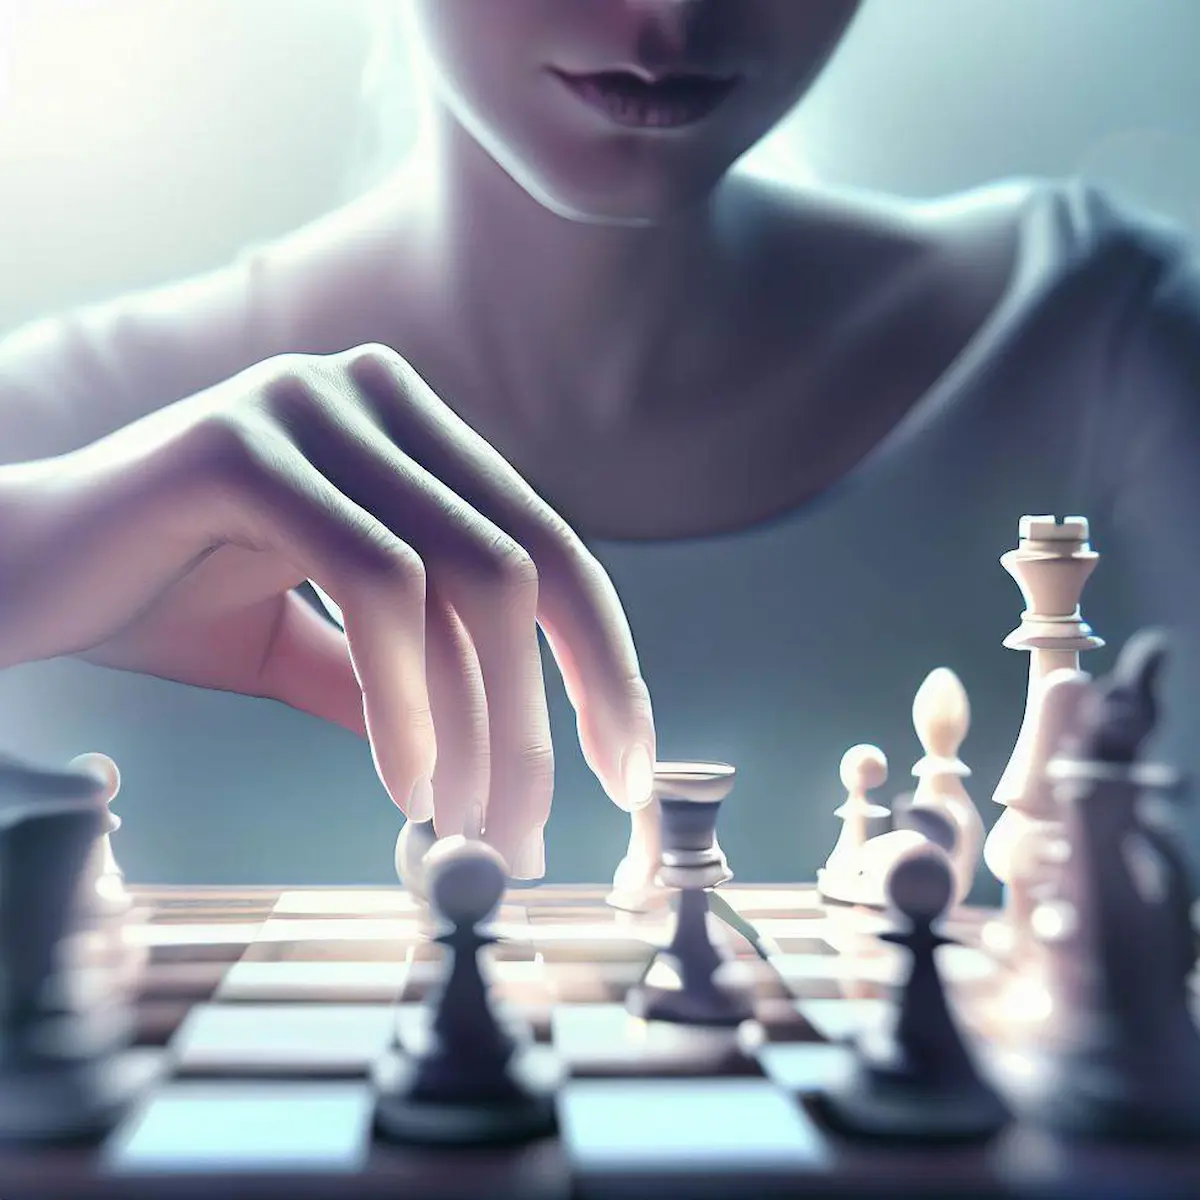 Ajedrez para principiantes: Guía paso a paso para aprender a jugar al  ajedrez. Domina las estrategias del juego y las aperturas más eficaces y  comienza a ganar